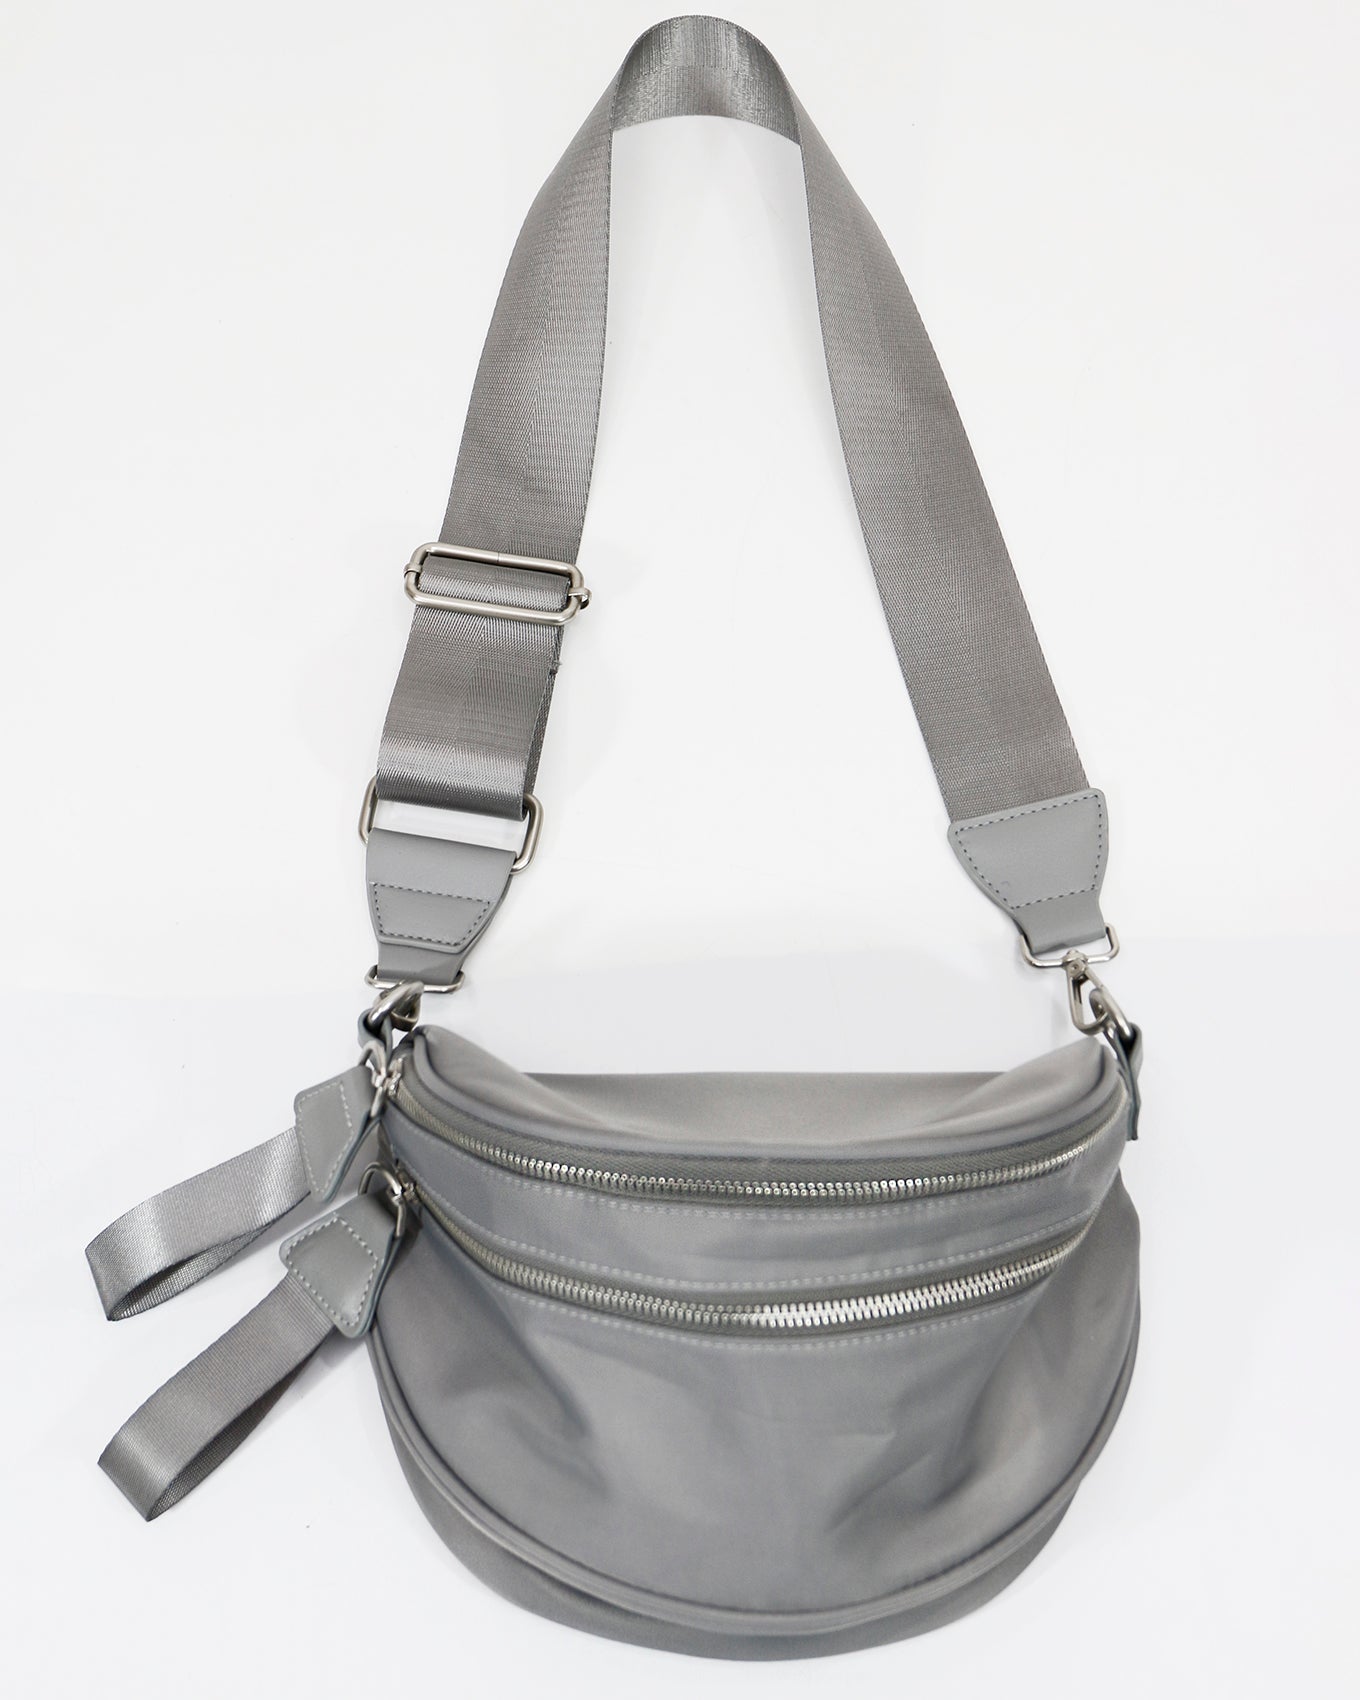 Full view of Grey Belt Bag